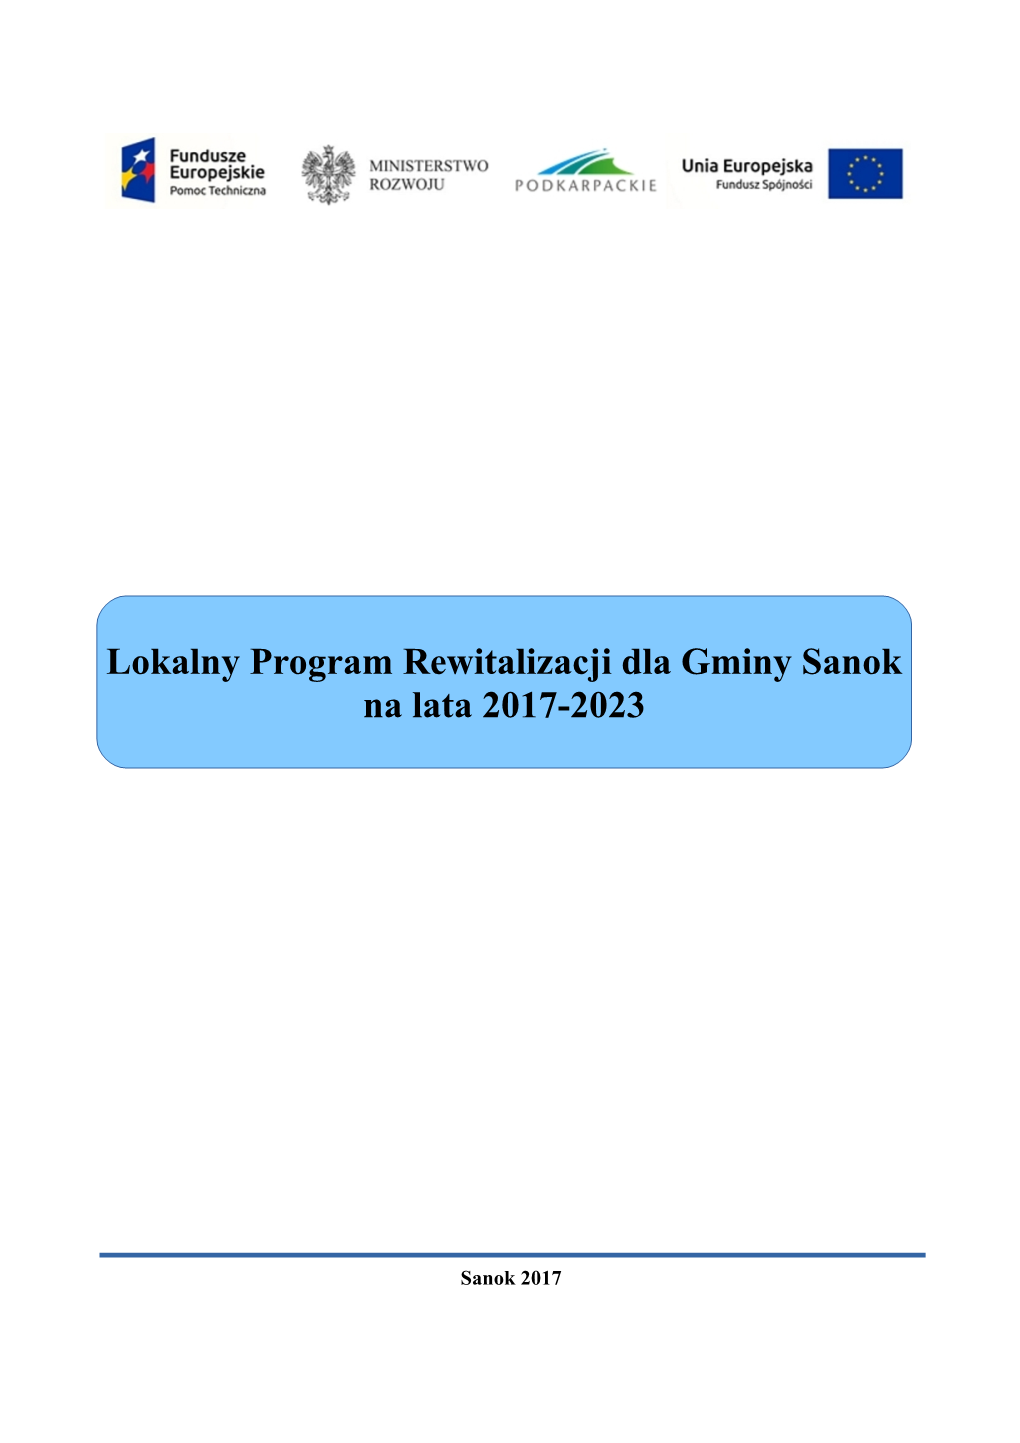 Lokalny Program Rewitalizacji Dla Gminy Sanok Na Lata 2017-2023